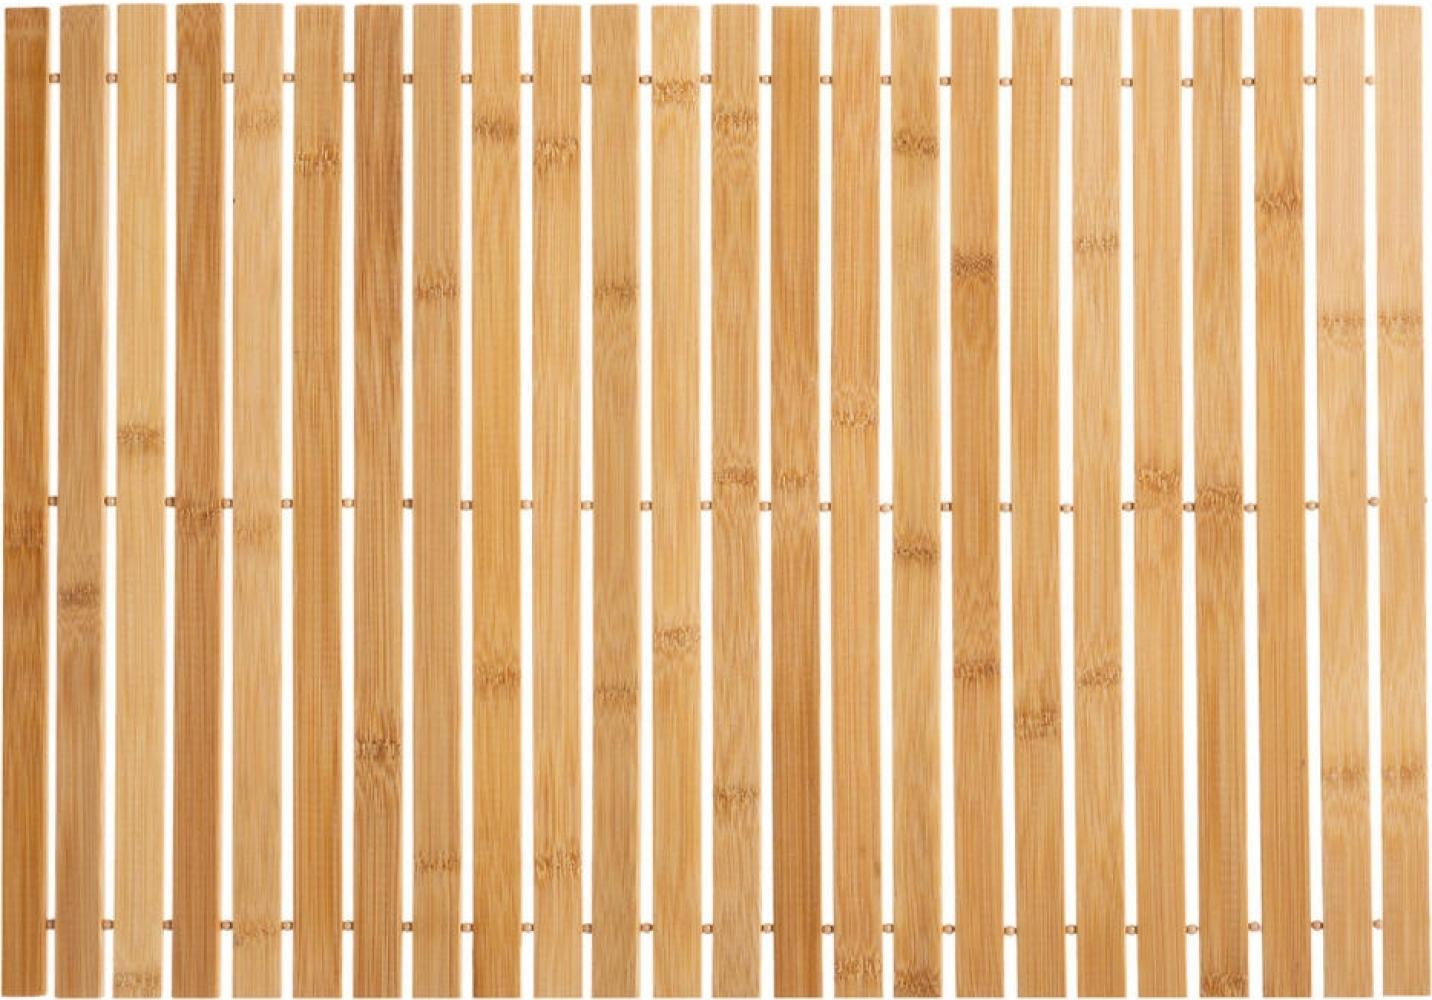 5five Simply Smart Badematte, Bambusmatte zum Aufrollen, Bambus, Braun, 40 x 60 cm, 174507 Bild 1